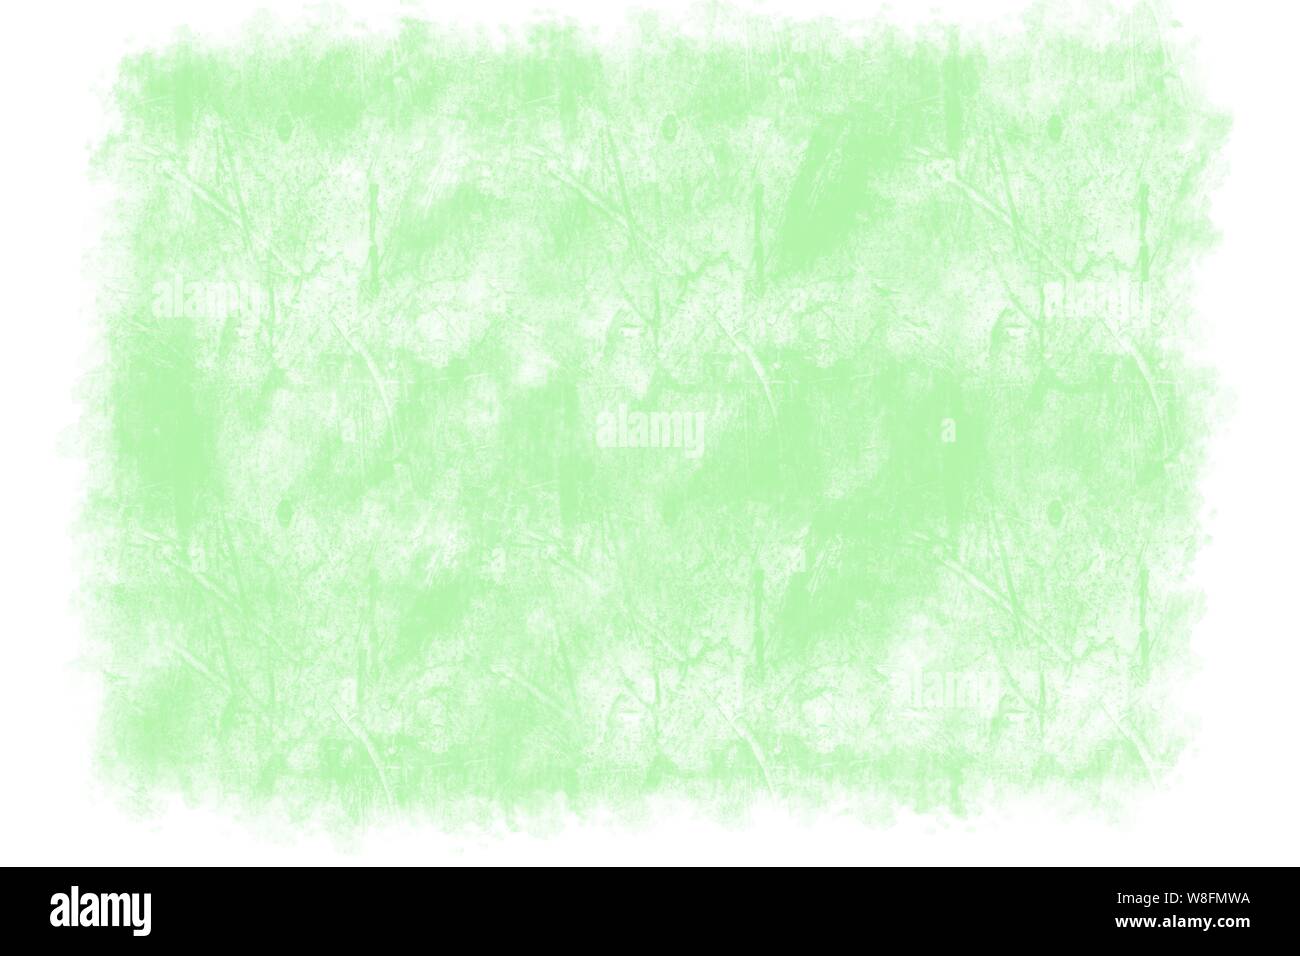 Neon green hand drawn ciment rugueux mur motif avec une bordure blanche Banque D'Images